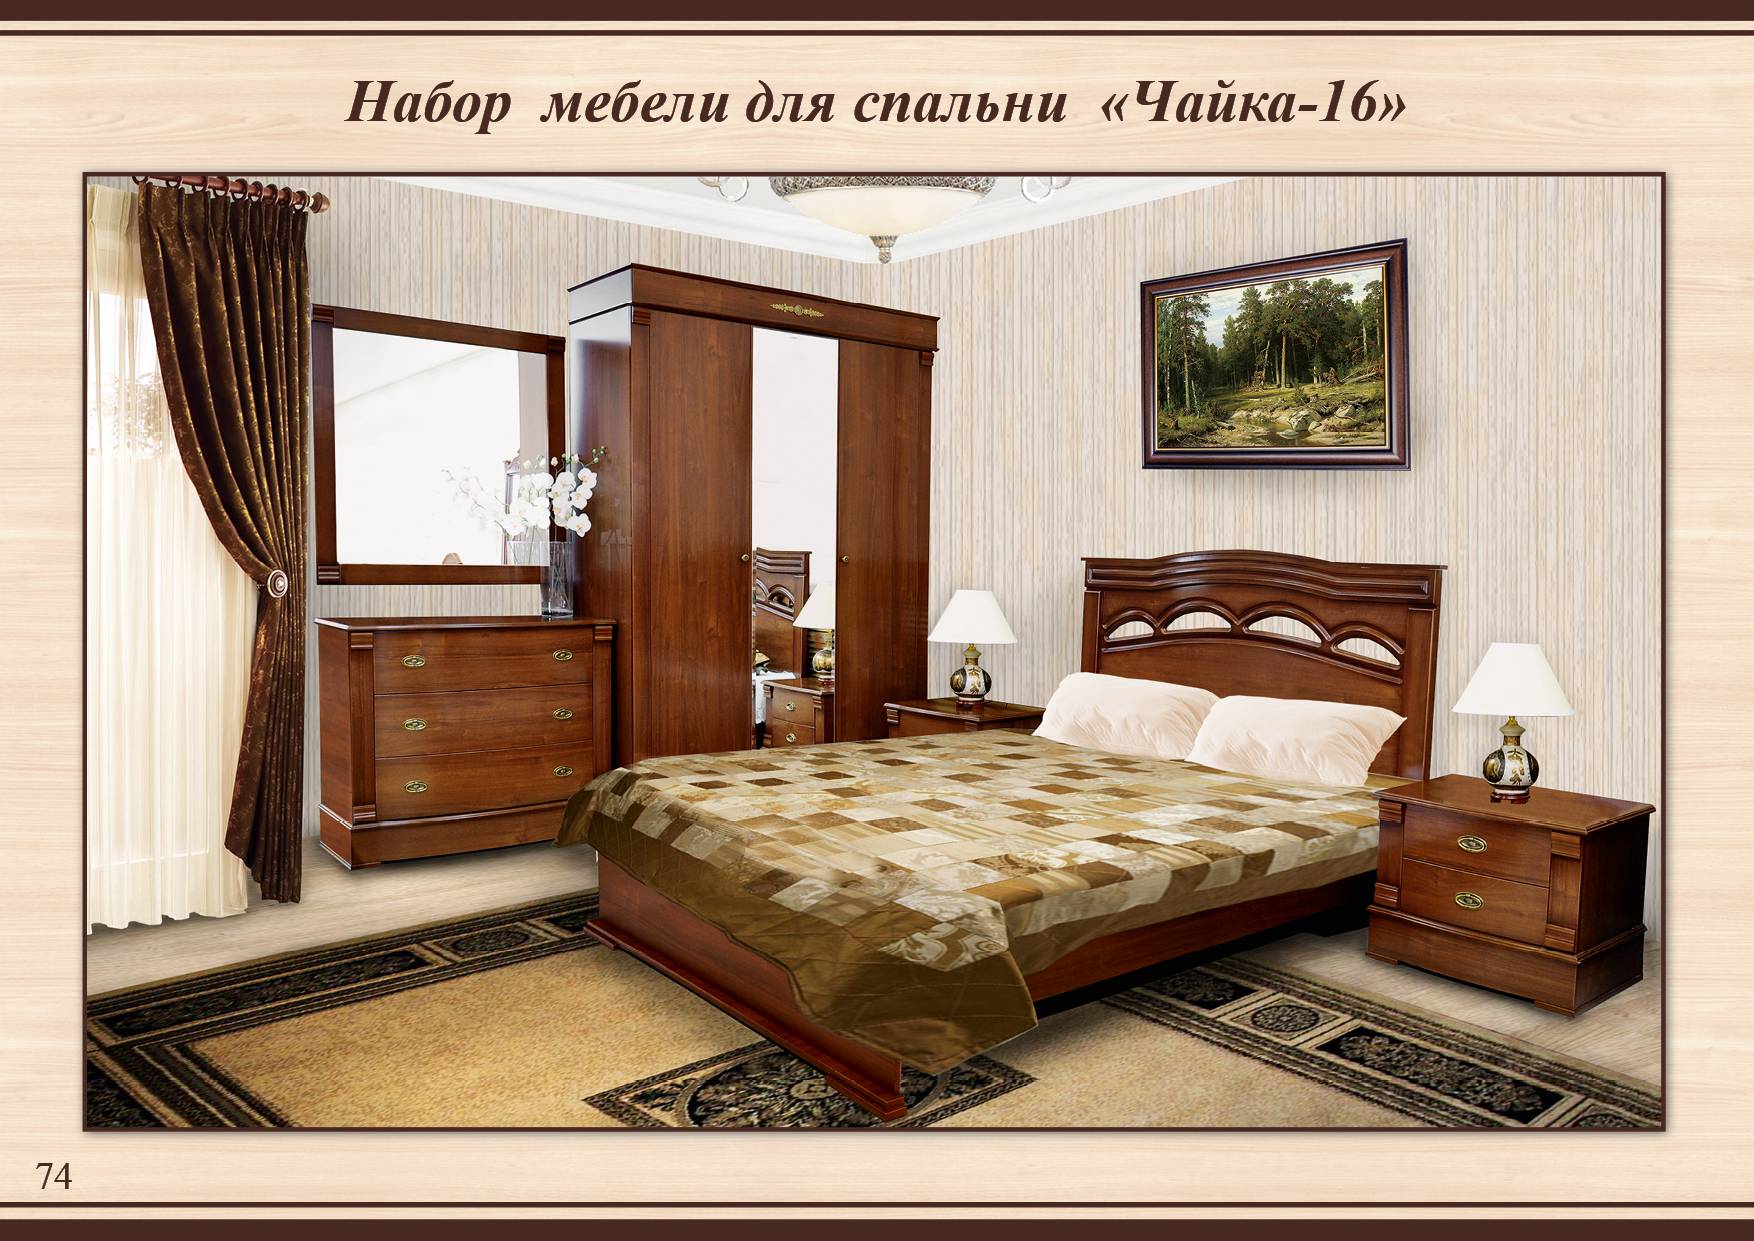 Модульная спальня Чайка 16 с Тамбовской фабрики: шкаф, кровать, комод, зеркало, прикроватные тумбочки